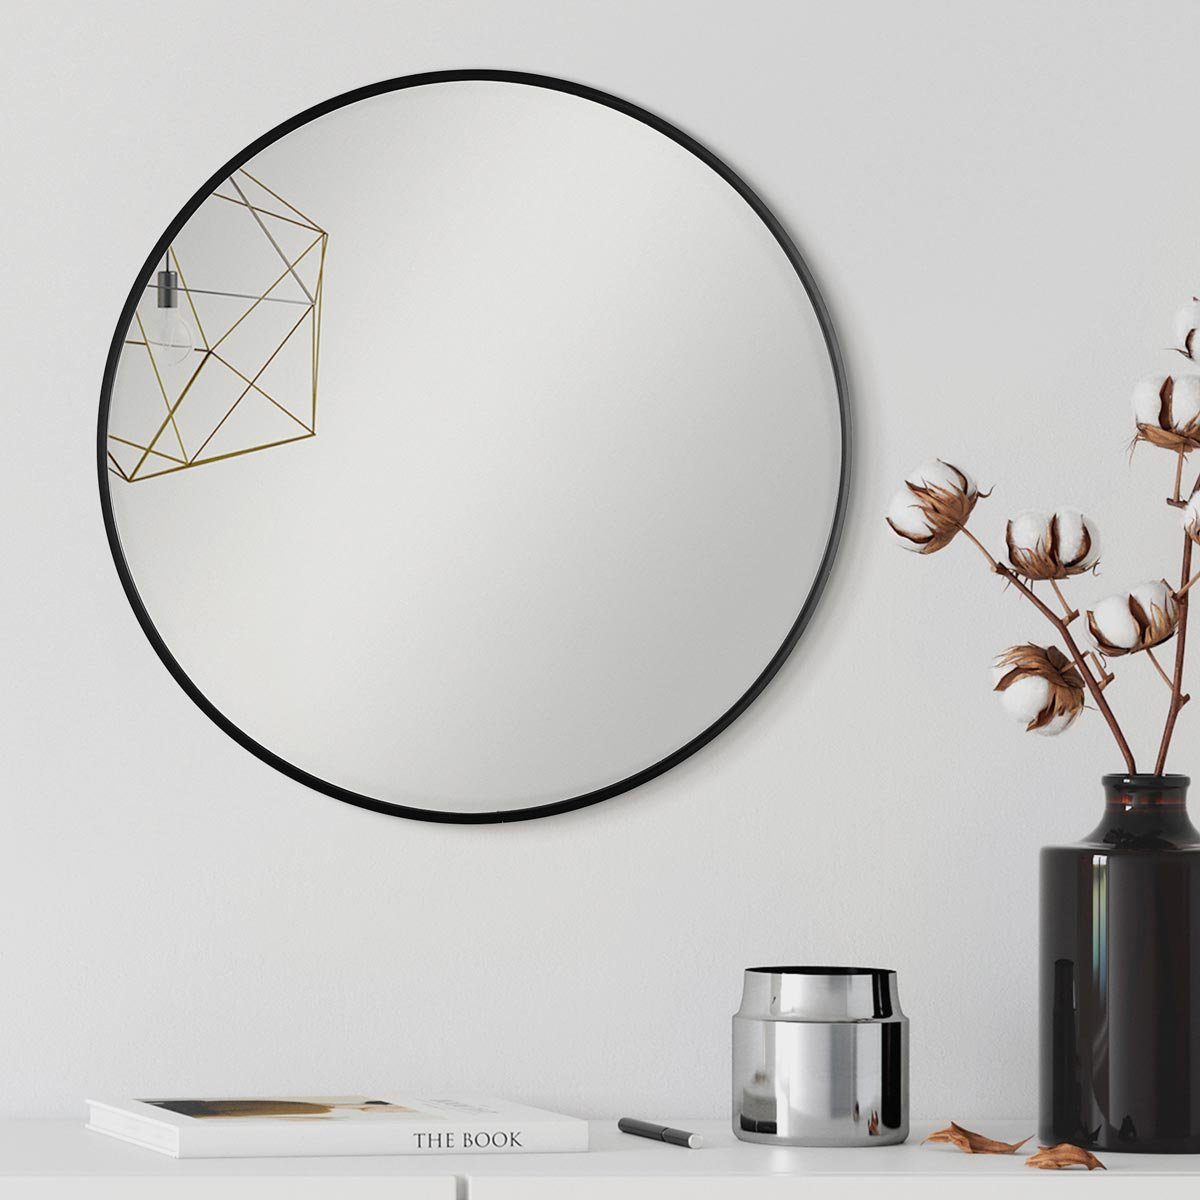 PHOTOLINI Spiegel eleganter Schwarz schmaler Rahmen Wandspiegel, rund mit Metallrahmen,